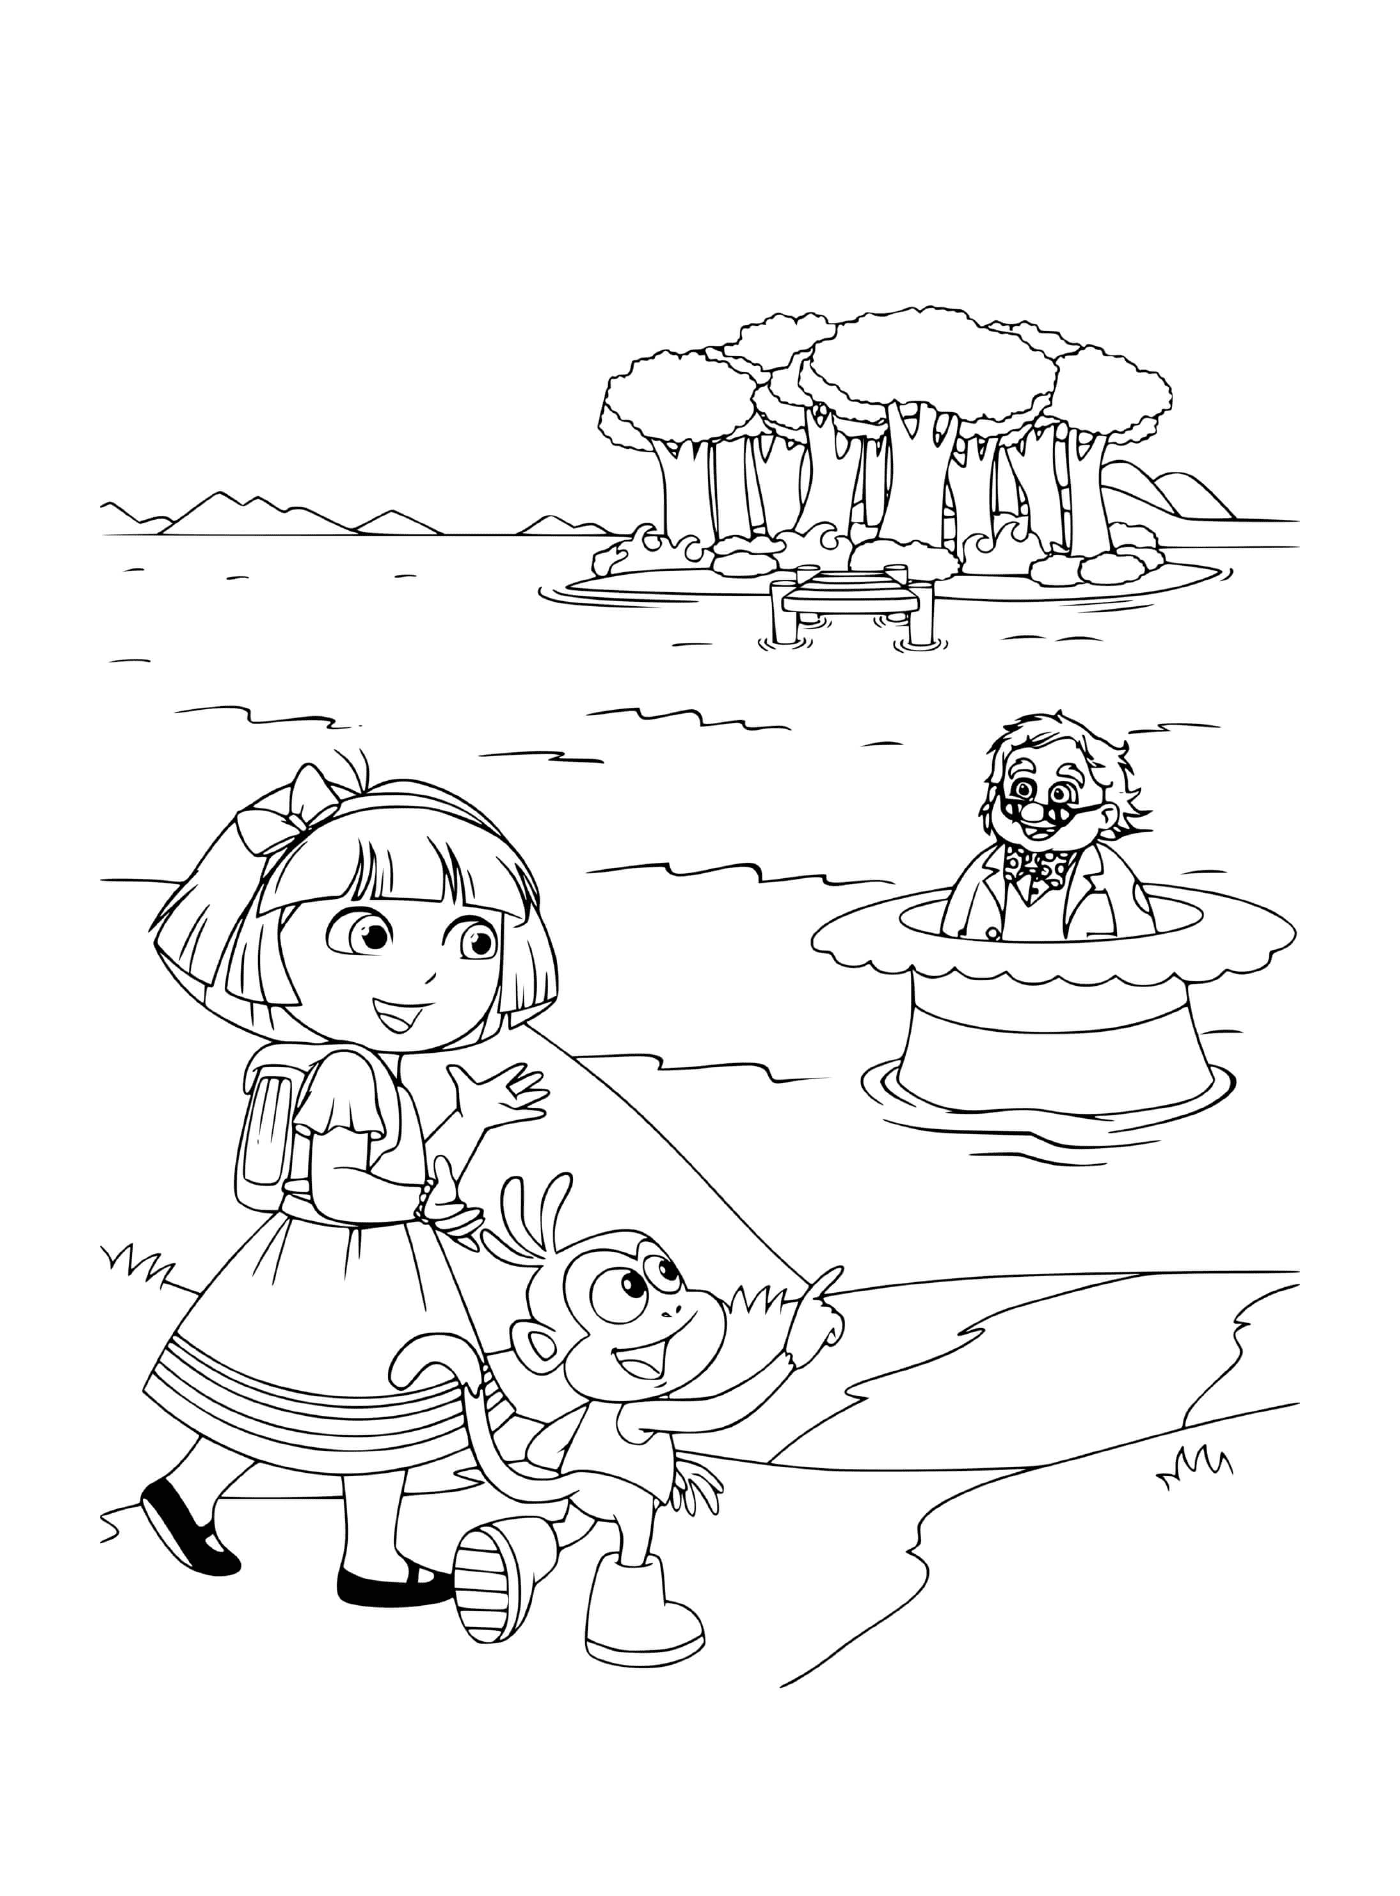  Dora und Babouche erkunden den Wald am See 